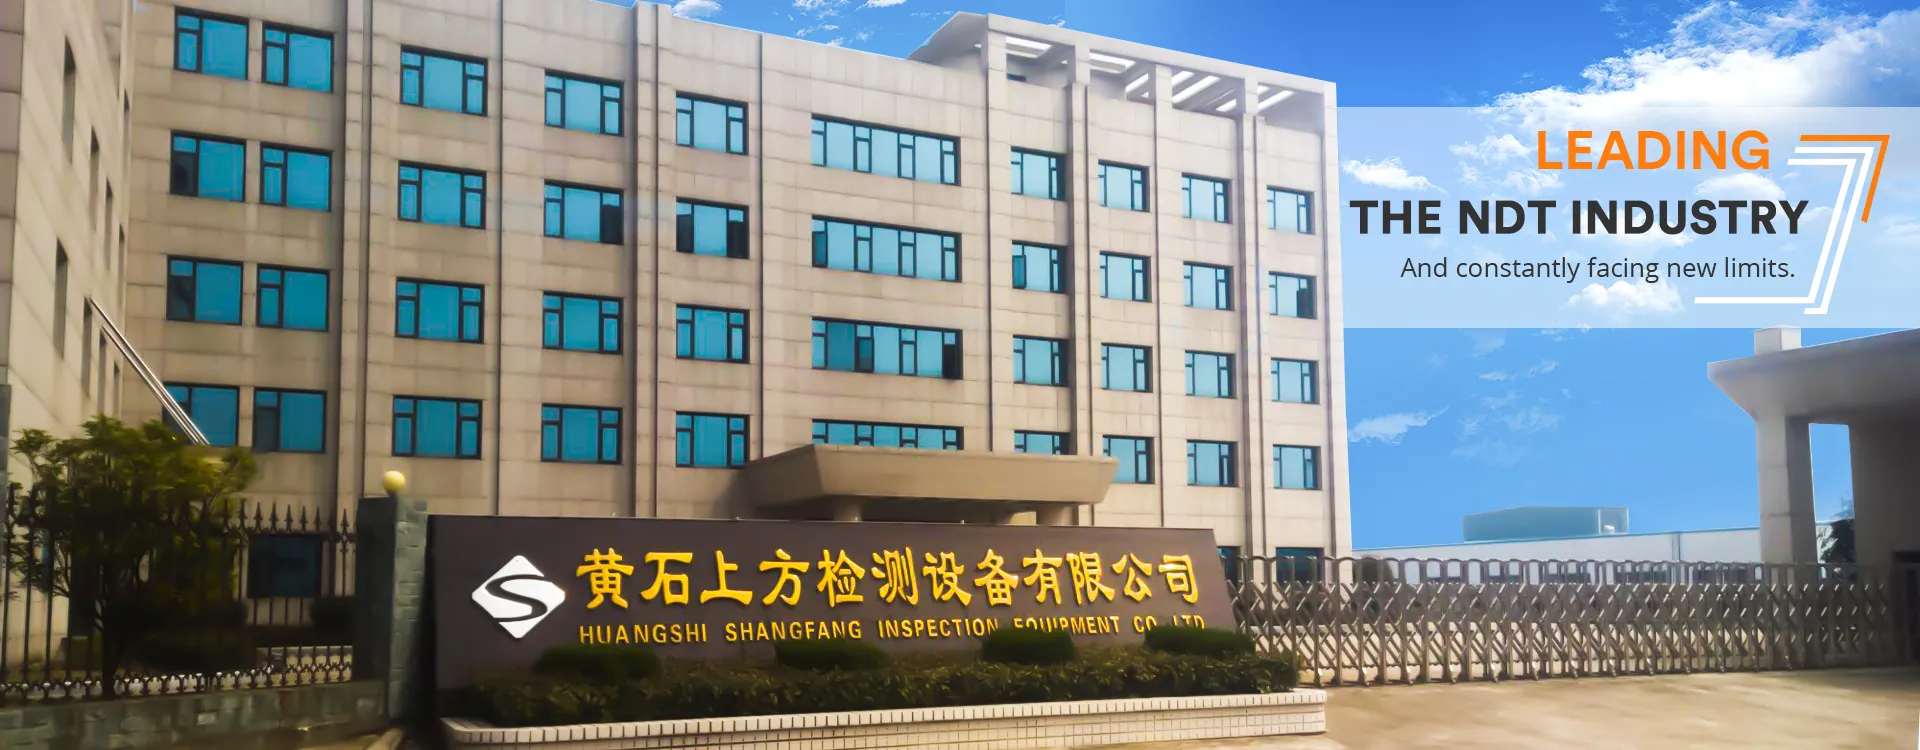 Huangshi Shangfang Inspection Equipment Co., Ltd.